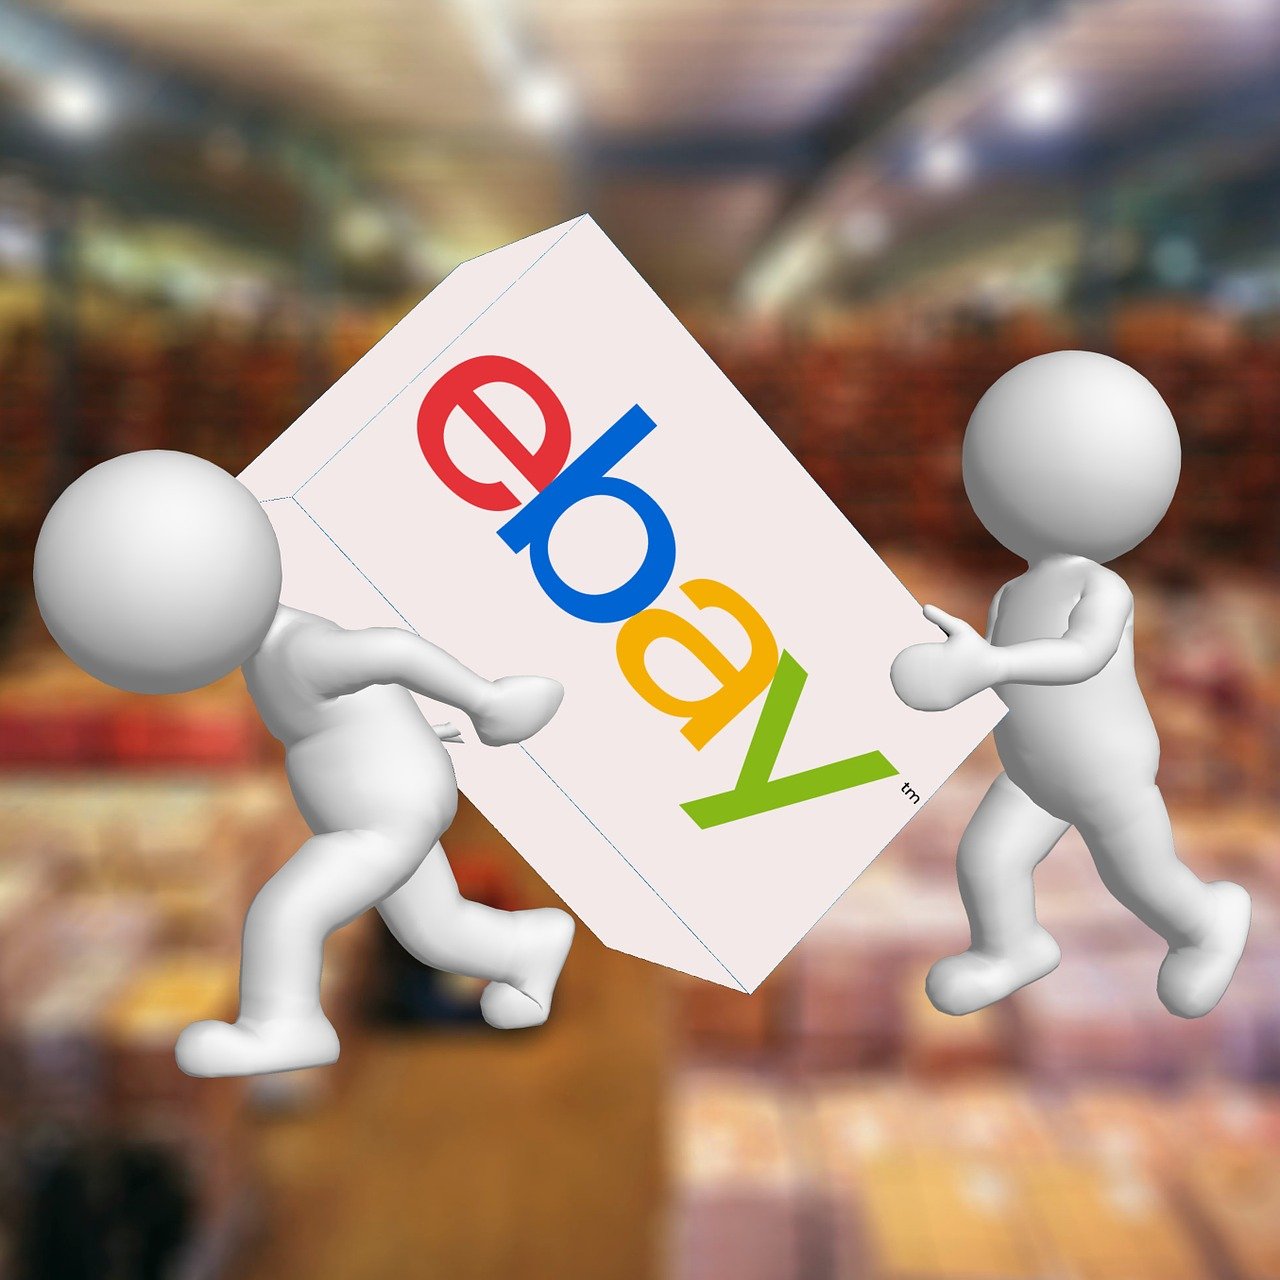 Selling on eBay vs Amazon vs Etsy